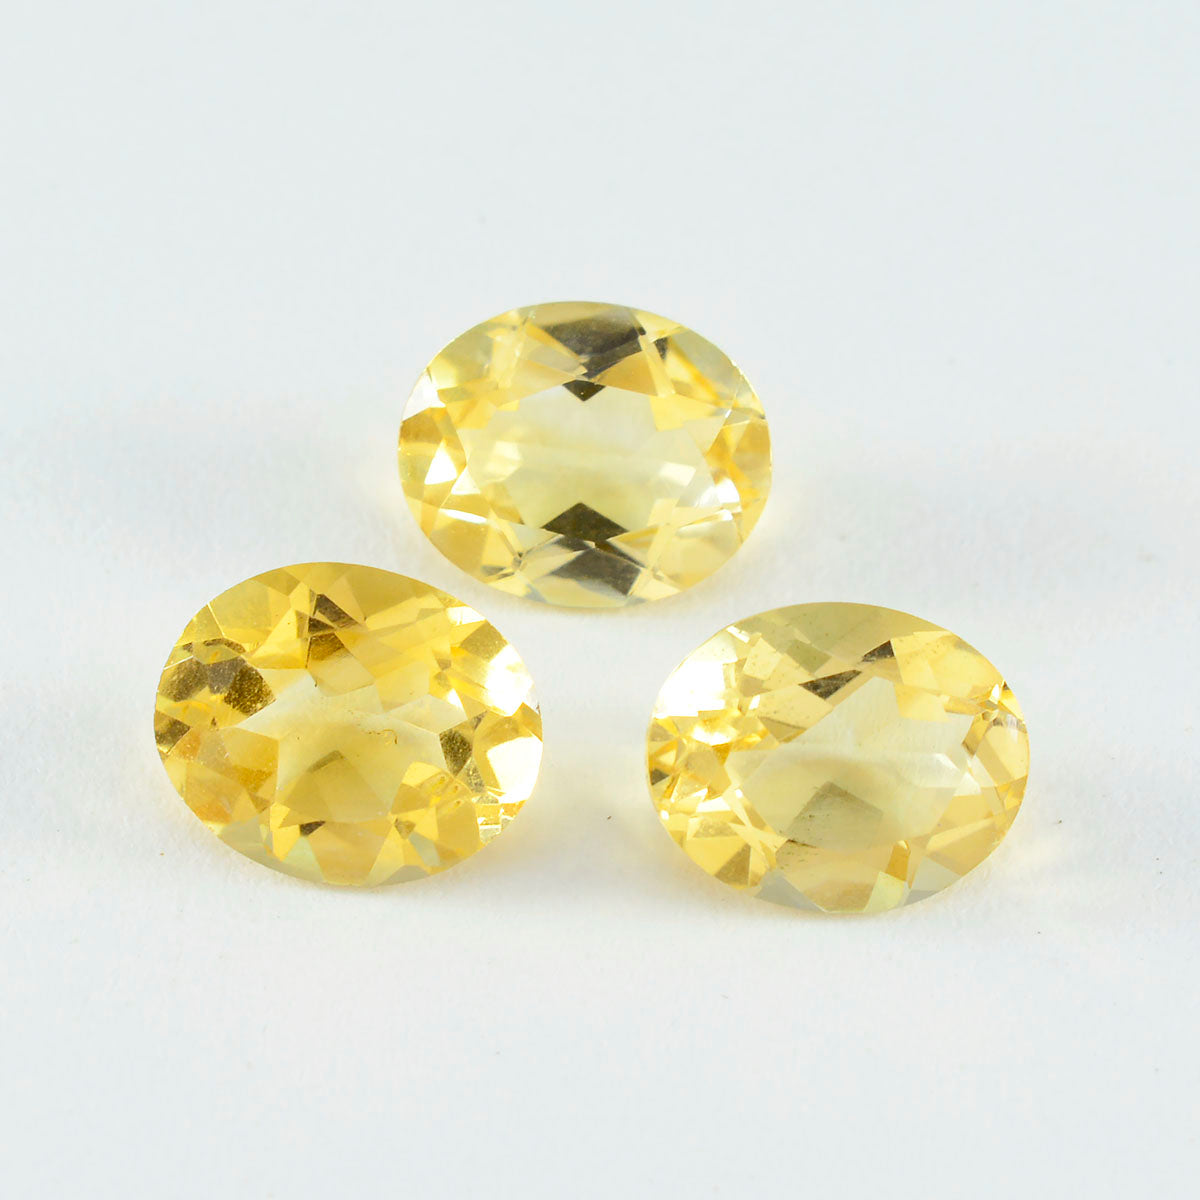 riyogems 1шт натуральный желтый цитрин ограненный 10x12 мм овальной формы красивый качественный камень